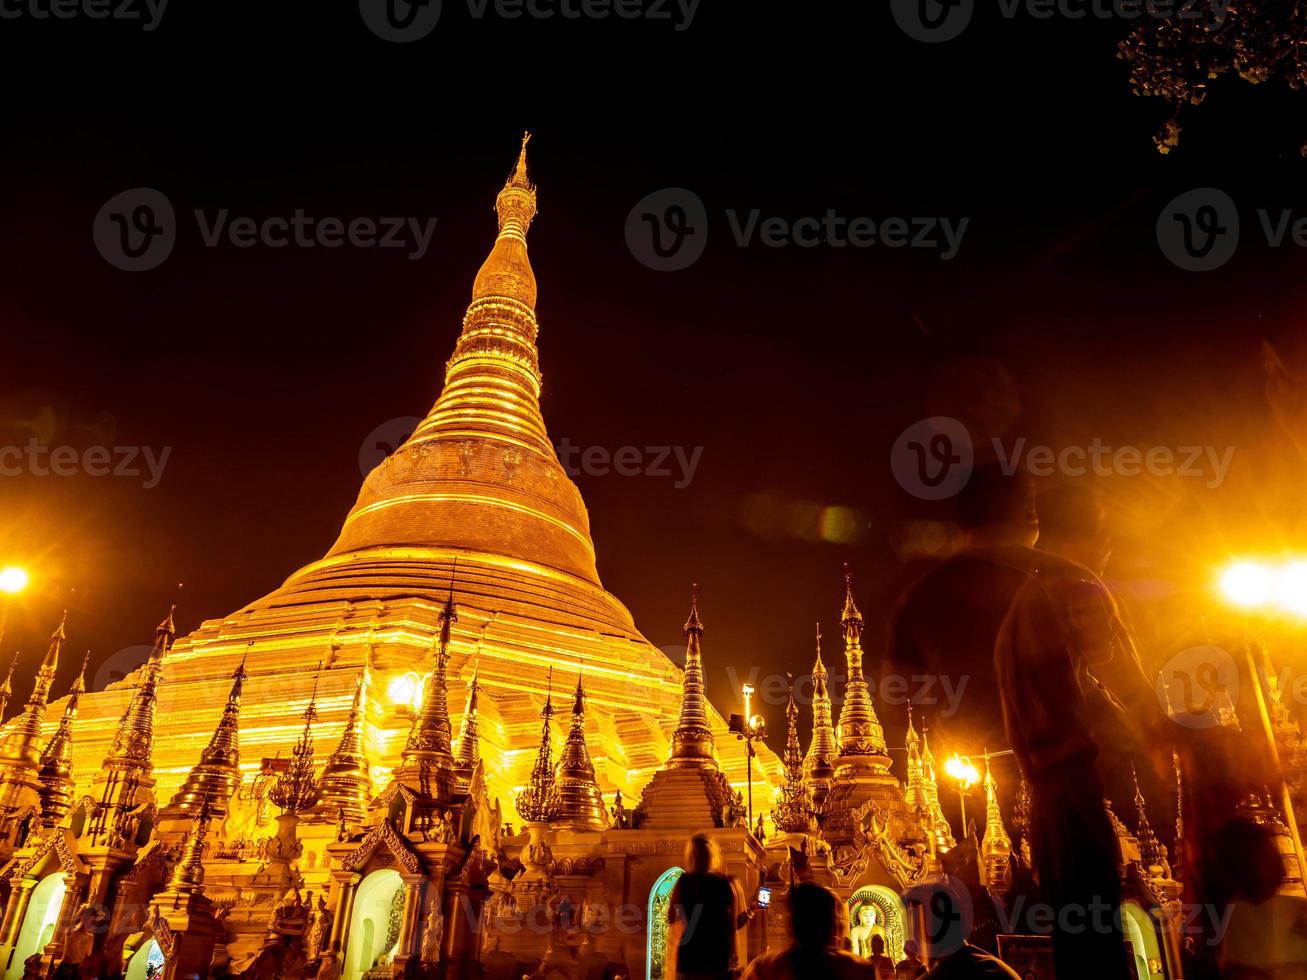 les pagodes dorées et les mondops sont illuminés à la lumière de la nuit photo